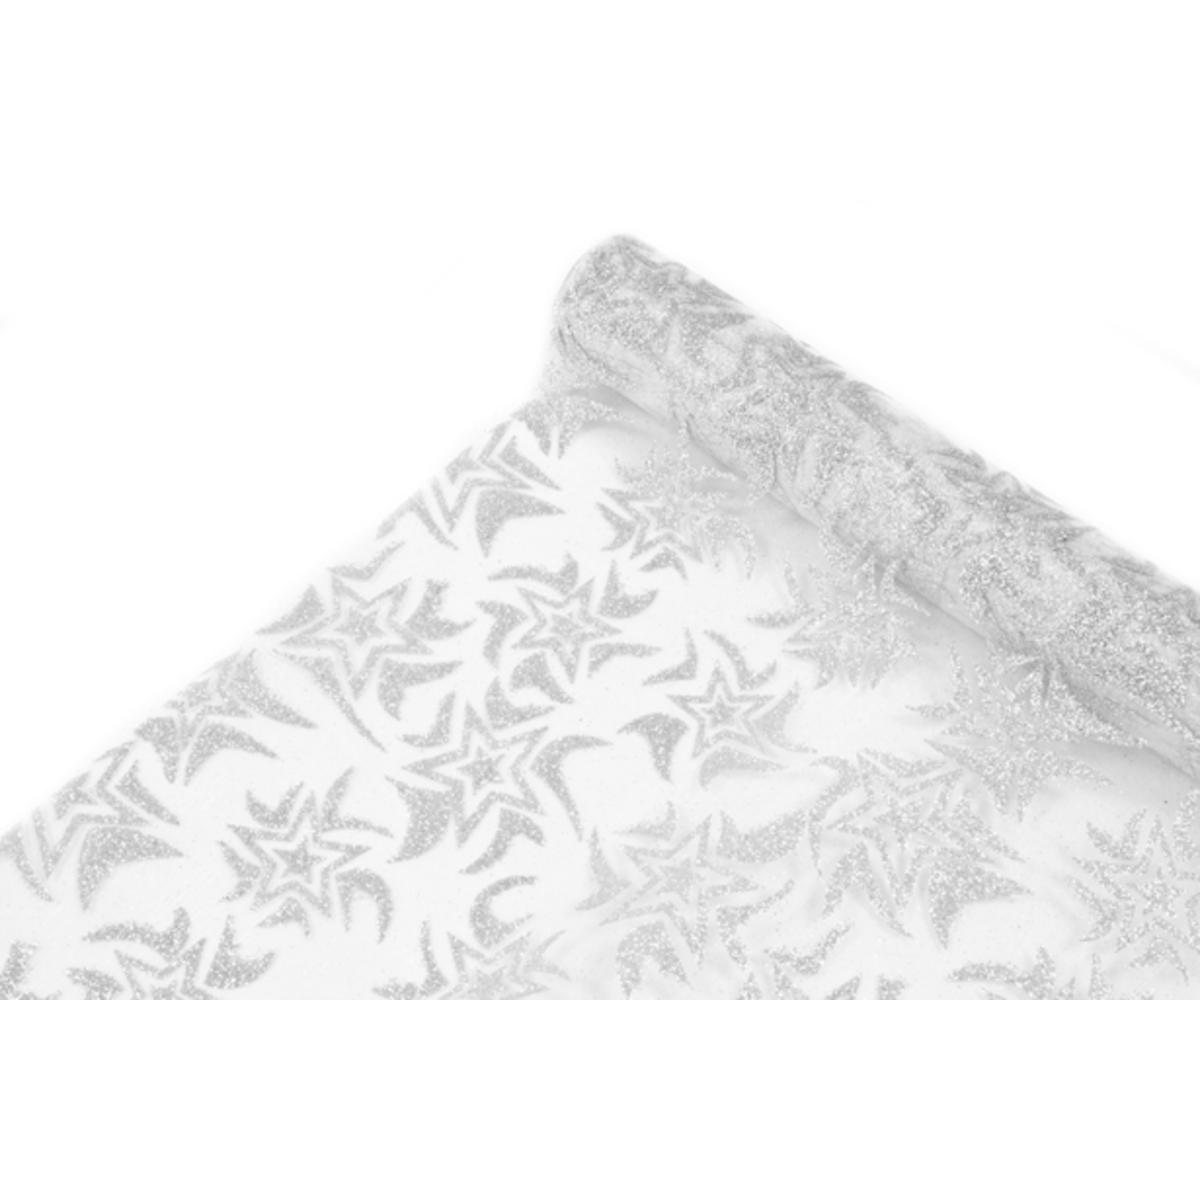 Rouleau pailleté motifs étoilés - Organza - 28 cm x 5 m - Blanc et argent